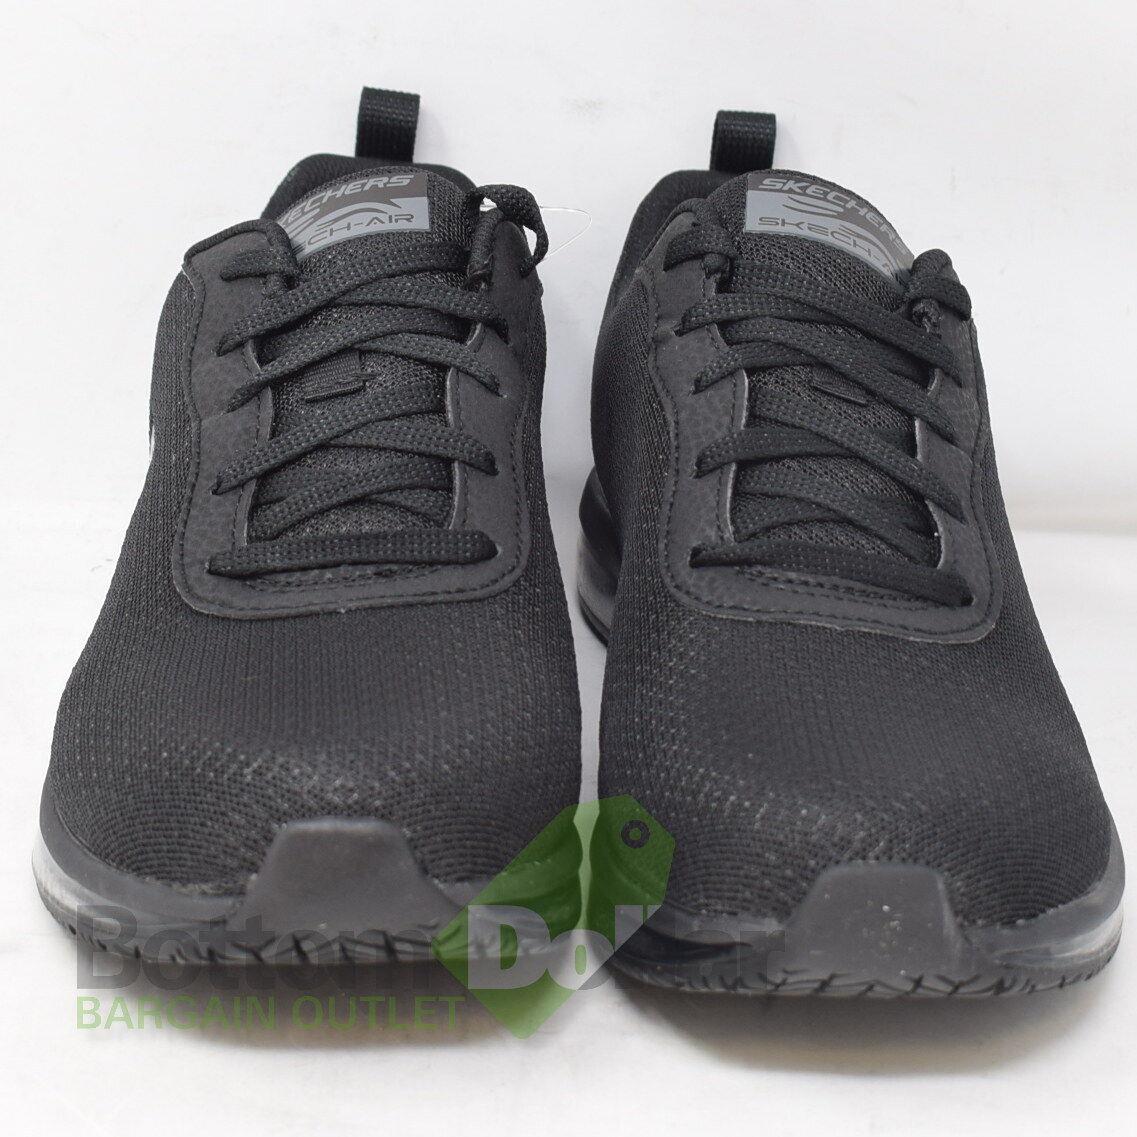 Skechers shoes Skech Air - Black 1